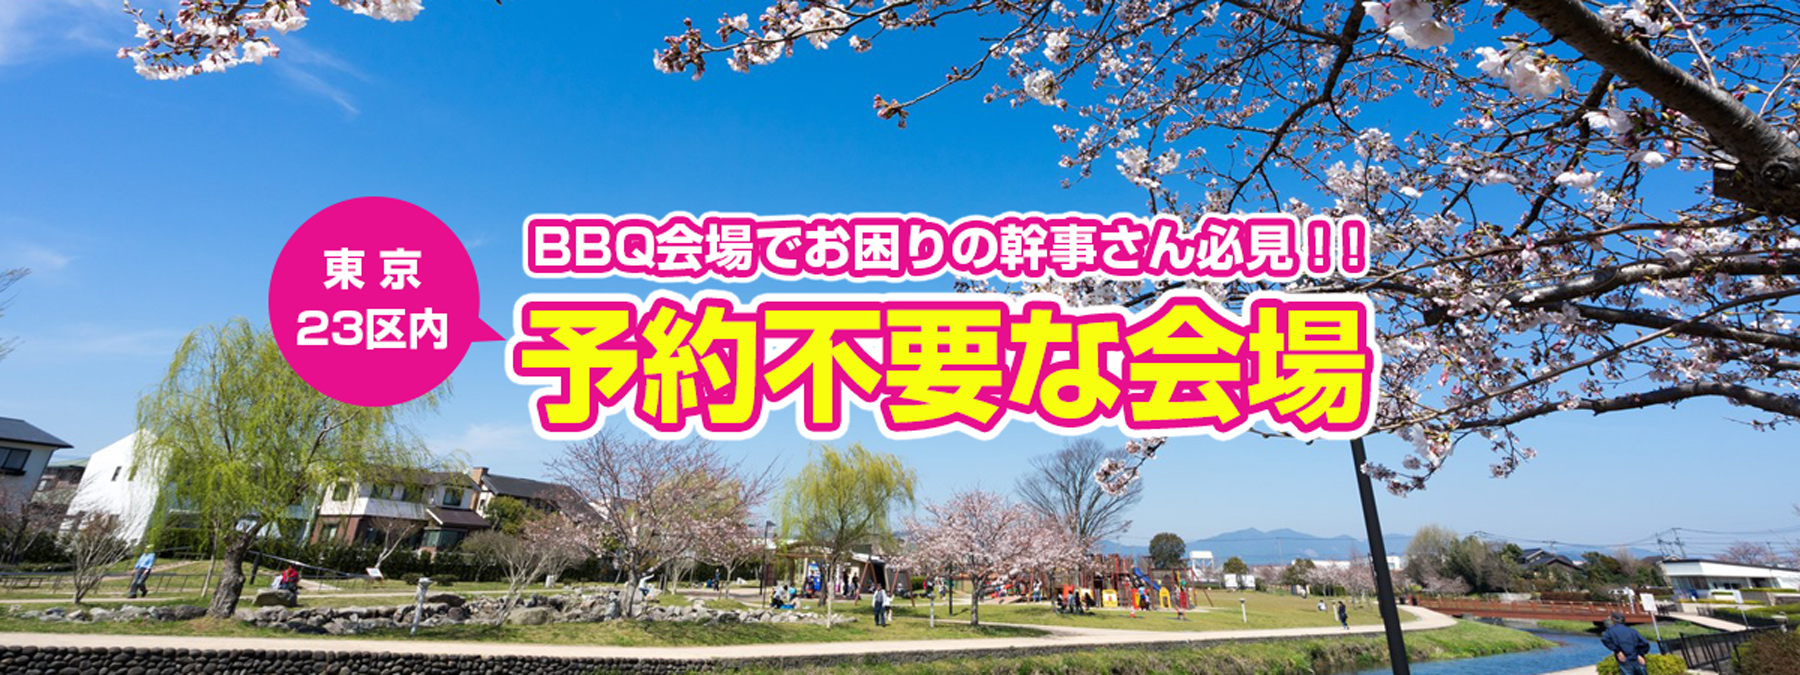 予約不要でbbqができる公園案内 東京23区内 バーベキューを手ぶらで楽しむなら 手軽にbbq Com